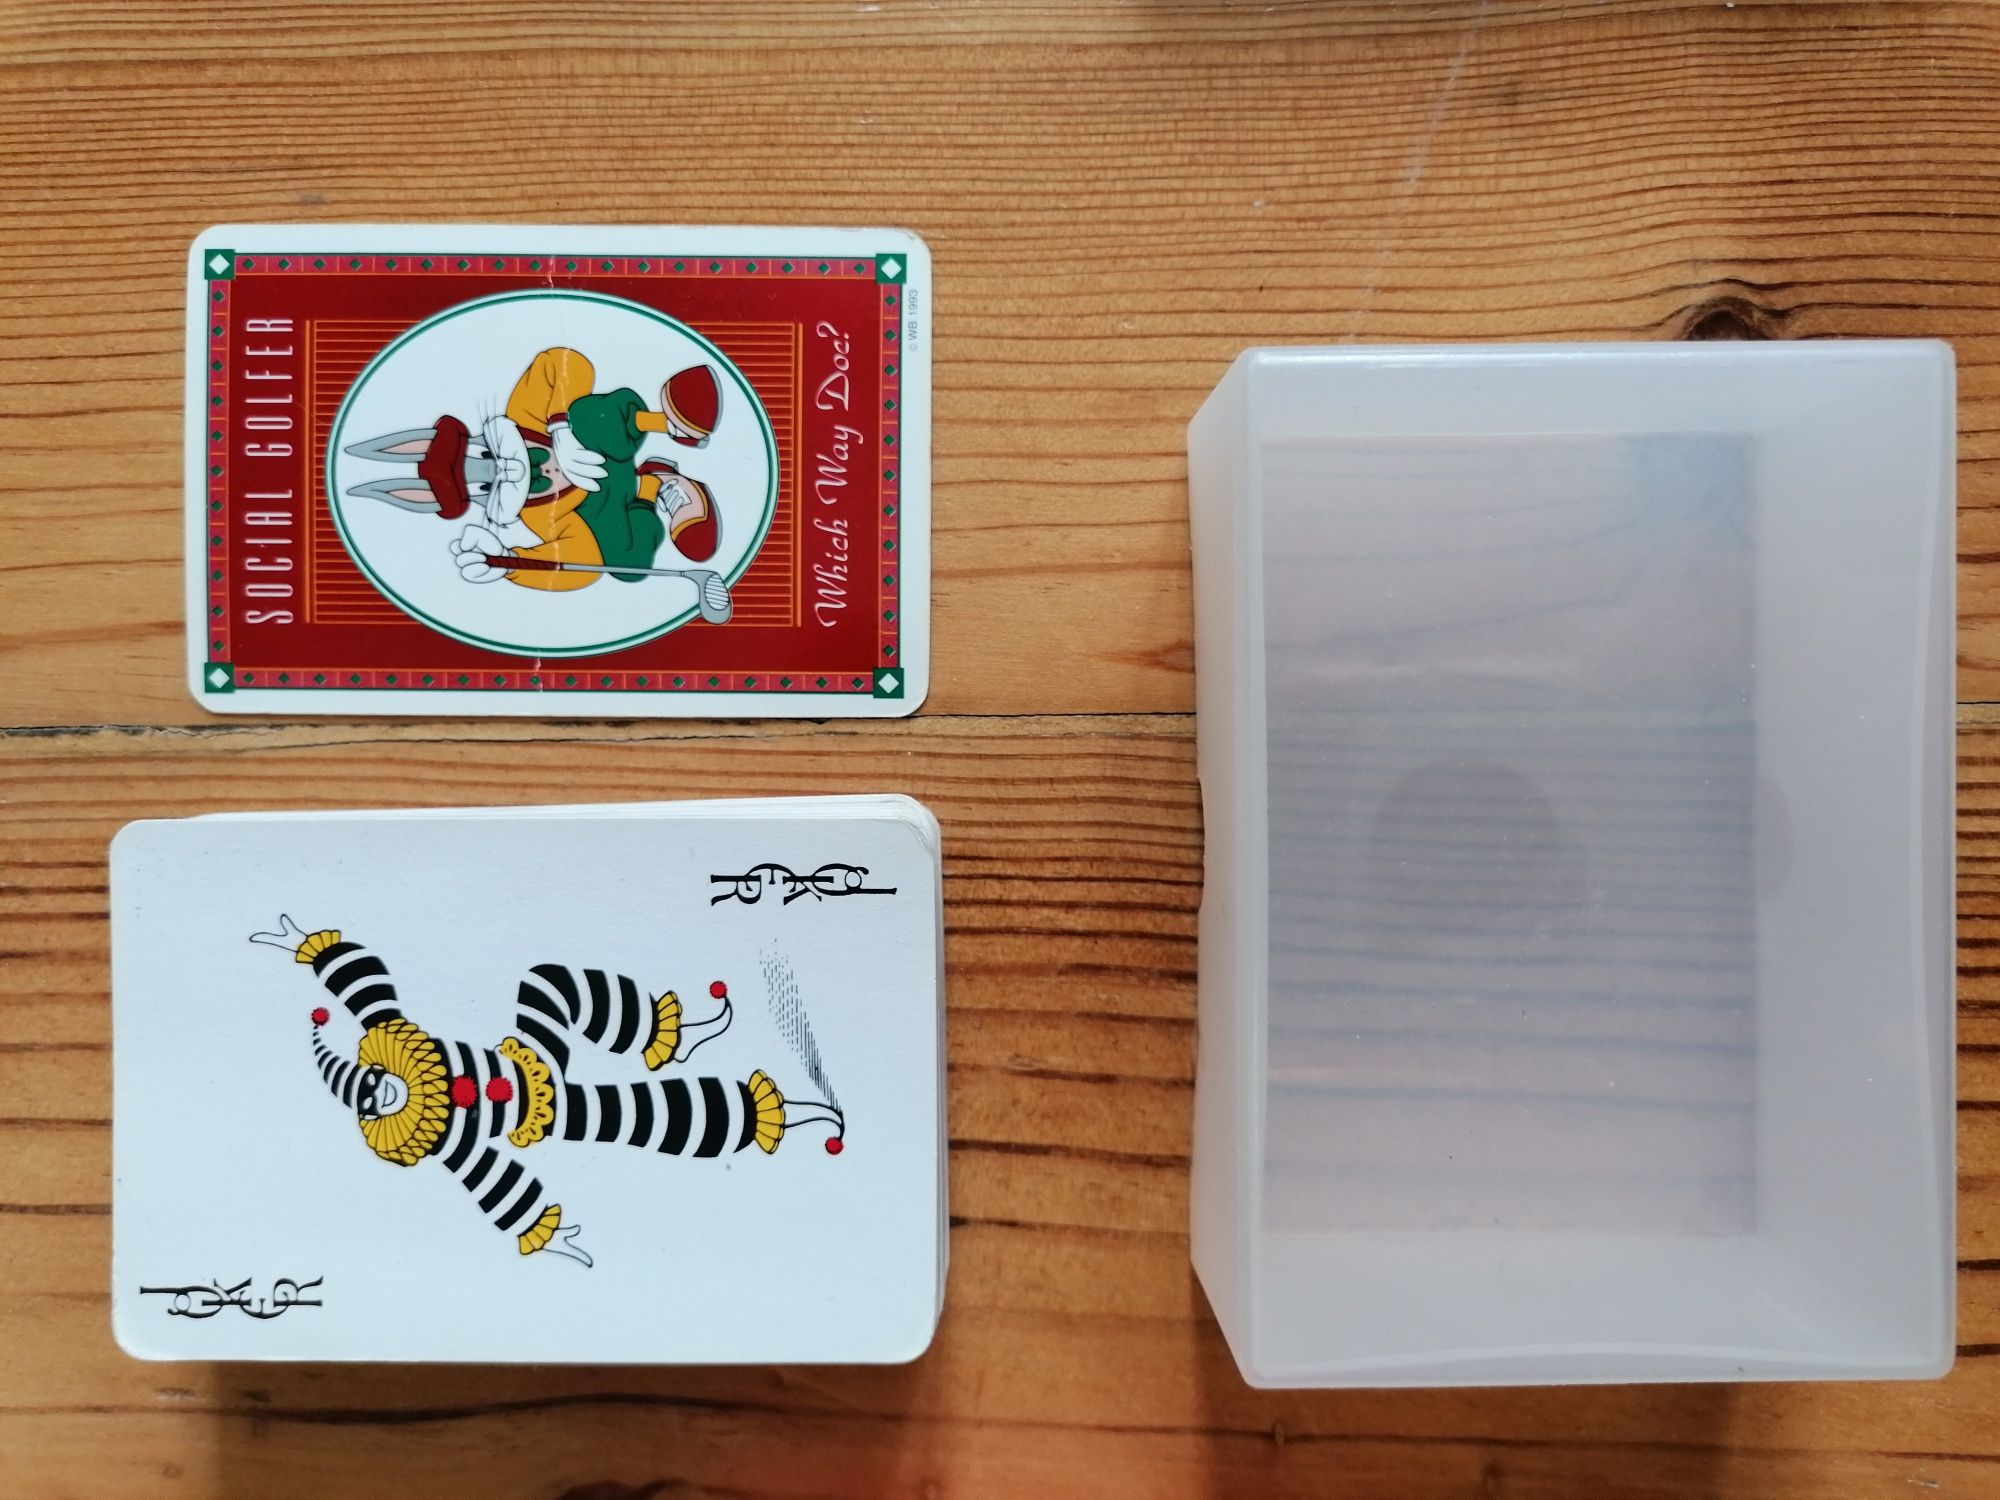 2 x Cartas (1 do Bugs Bunny tema golf) e jogo de cartas Uno